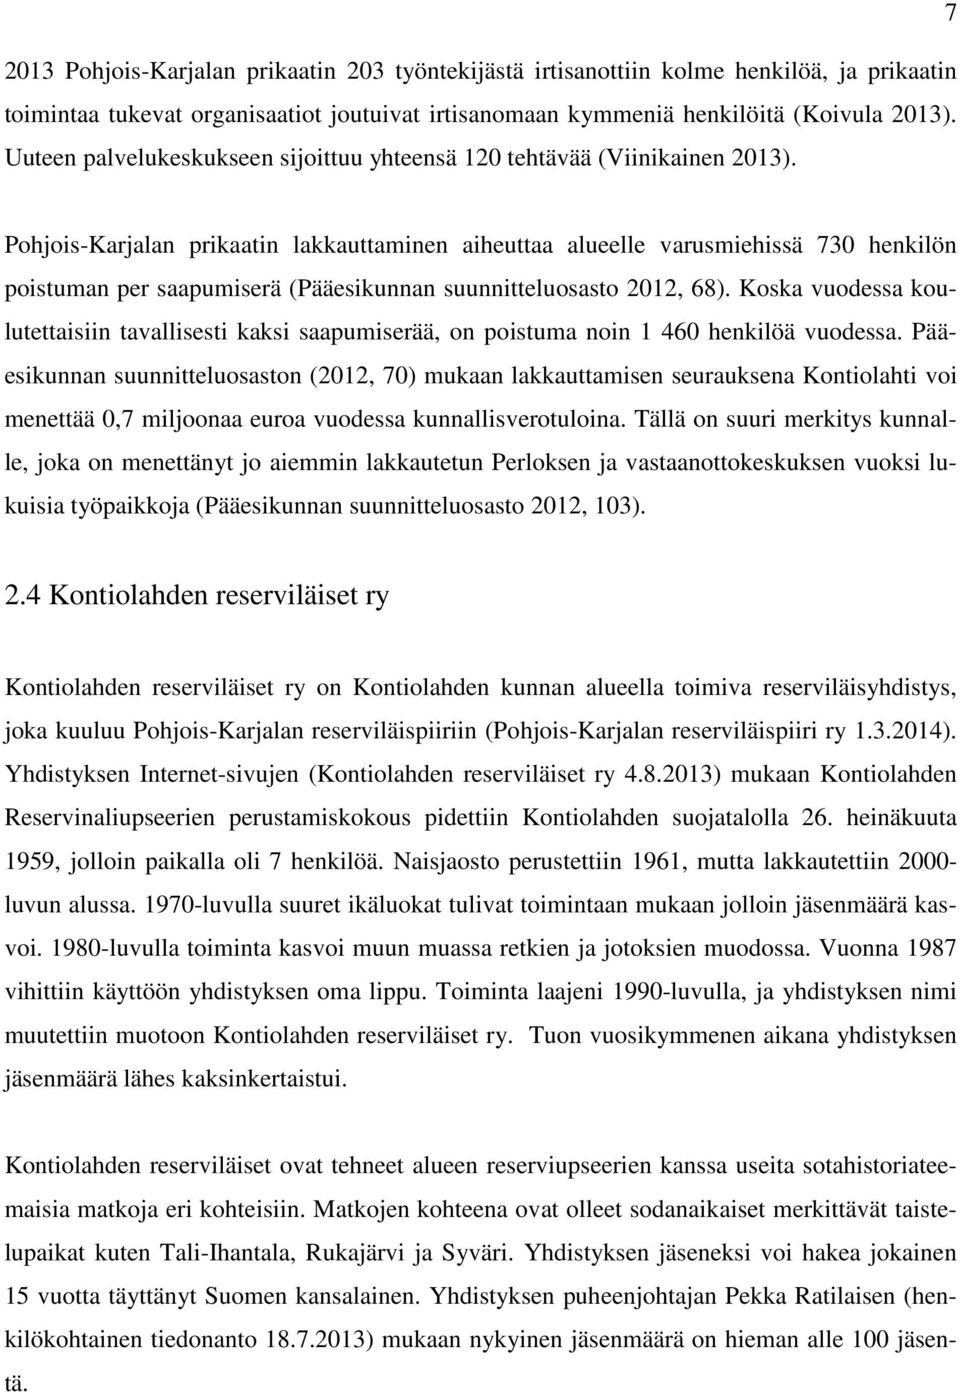 Pohjois-Karjalan prikaatin lakkauttaminen aiheuttaa alueelle varusmiehissä 730 henkilön poistuman per saapumiserä (Pääesikunnan suunnitteluosasto 2012, 68).